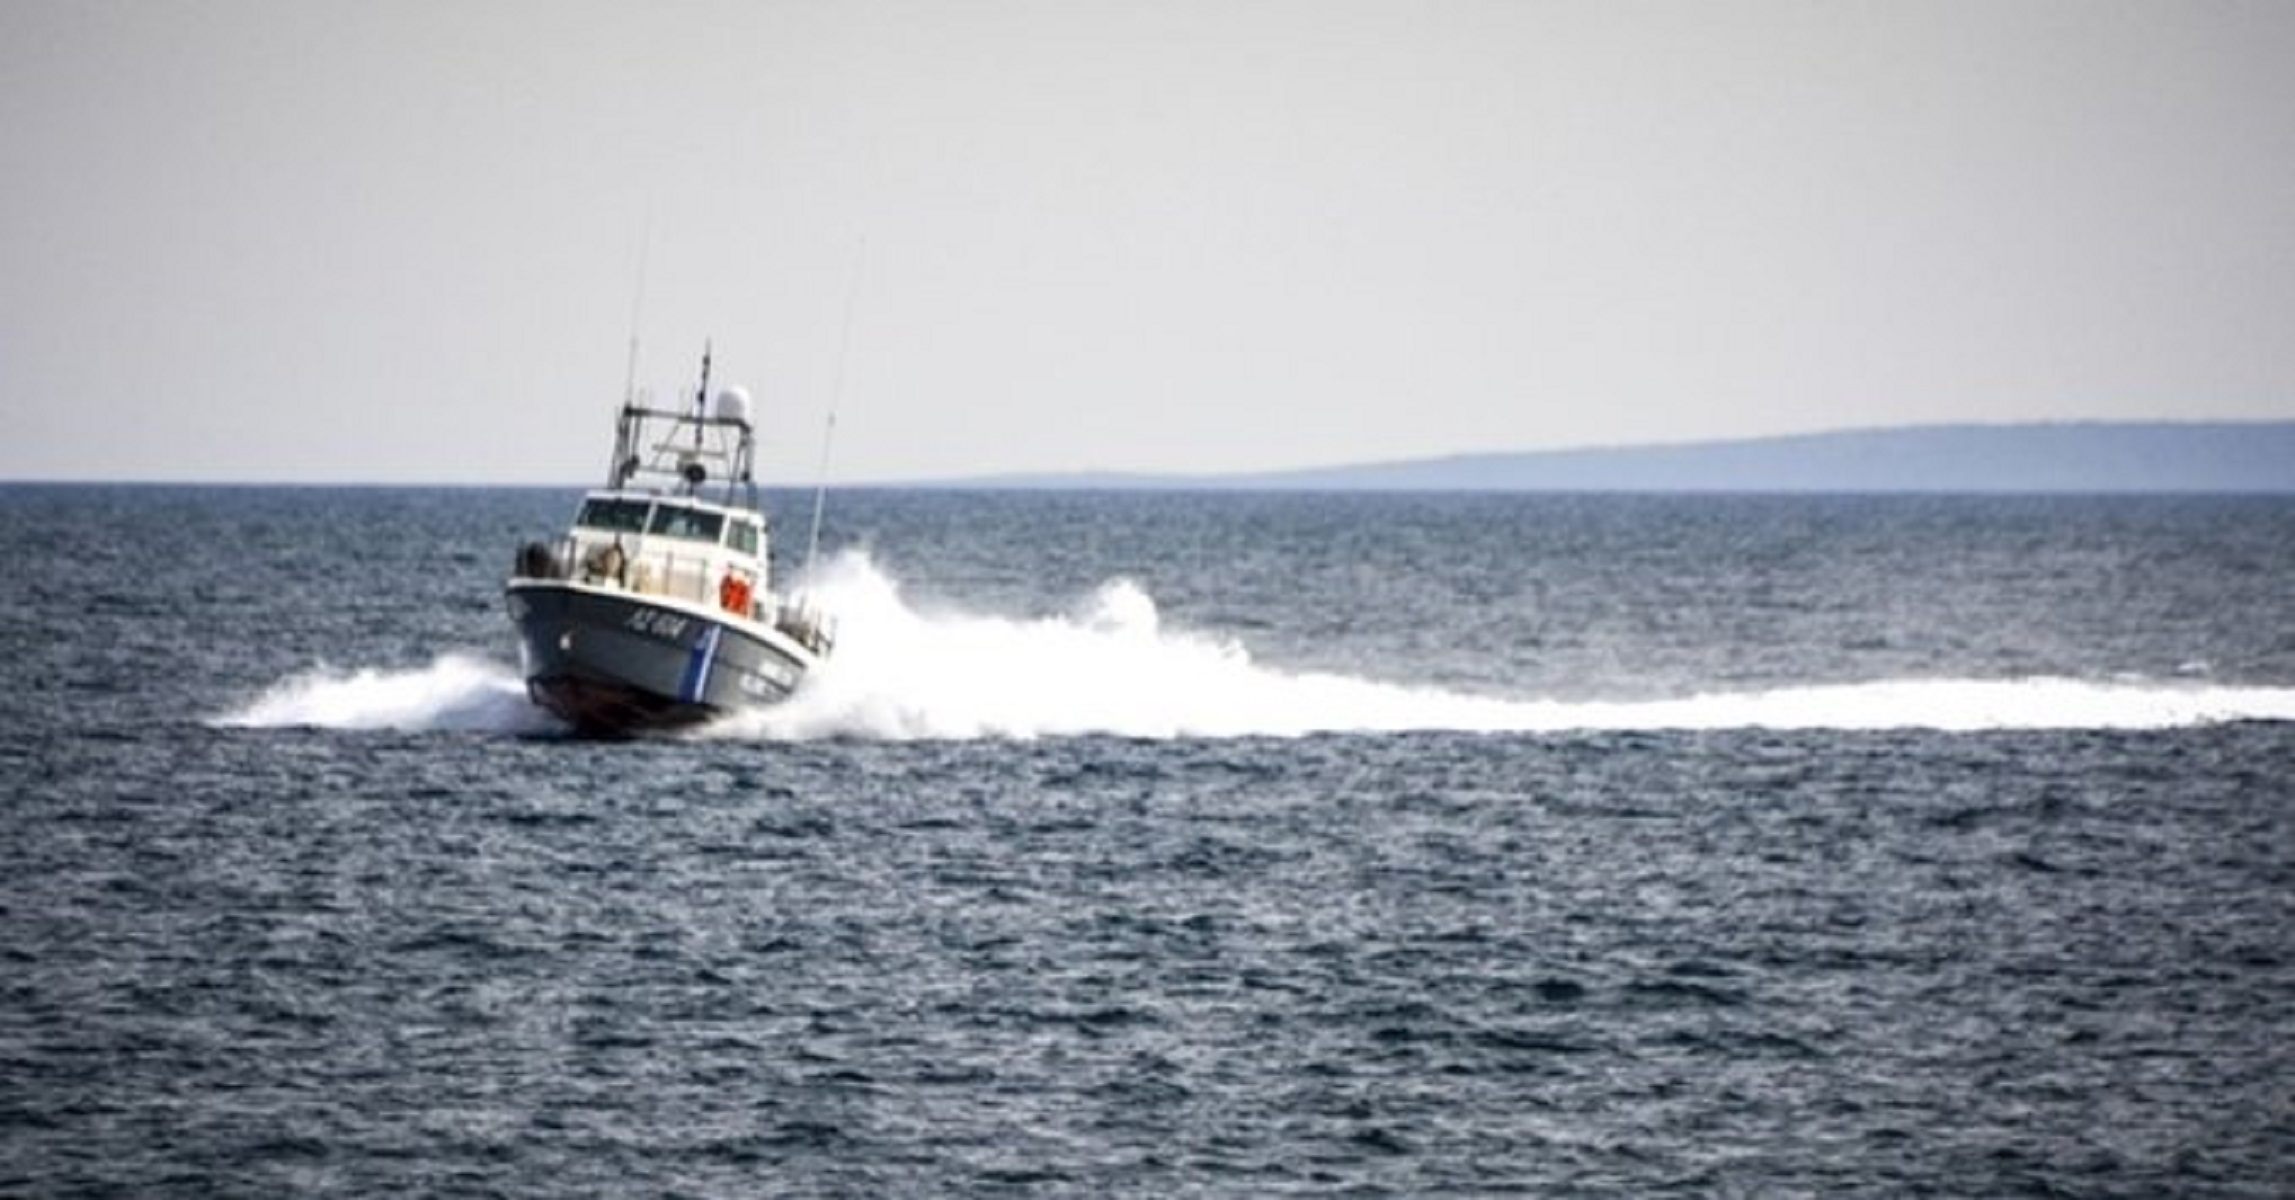 Αφέθηκε ελεύθερος ο ιδιοκτήτης του ταχύπλοου σκάφους για το θανατηφόρο ατύχημα στην Ορόκλινη